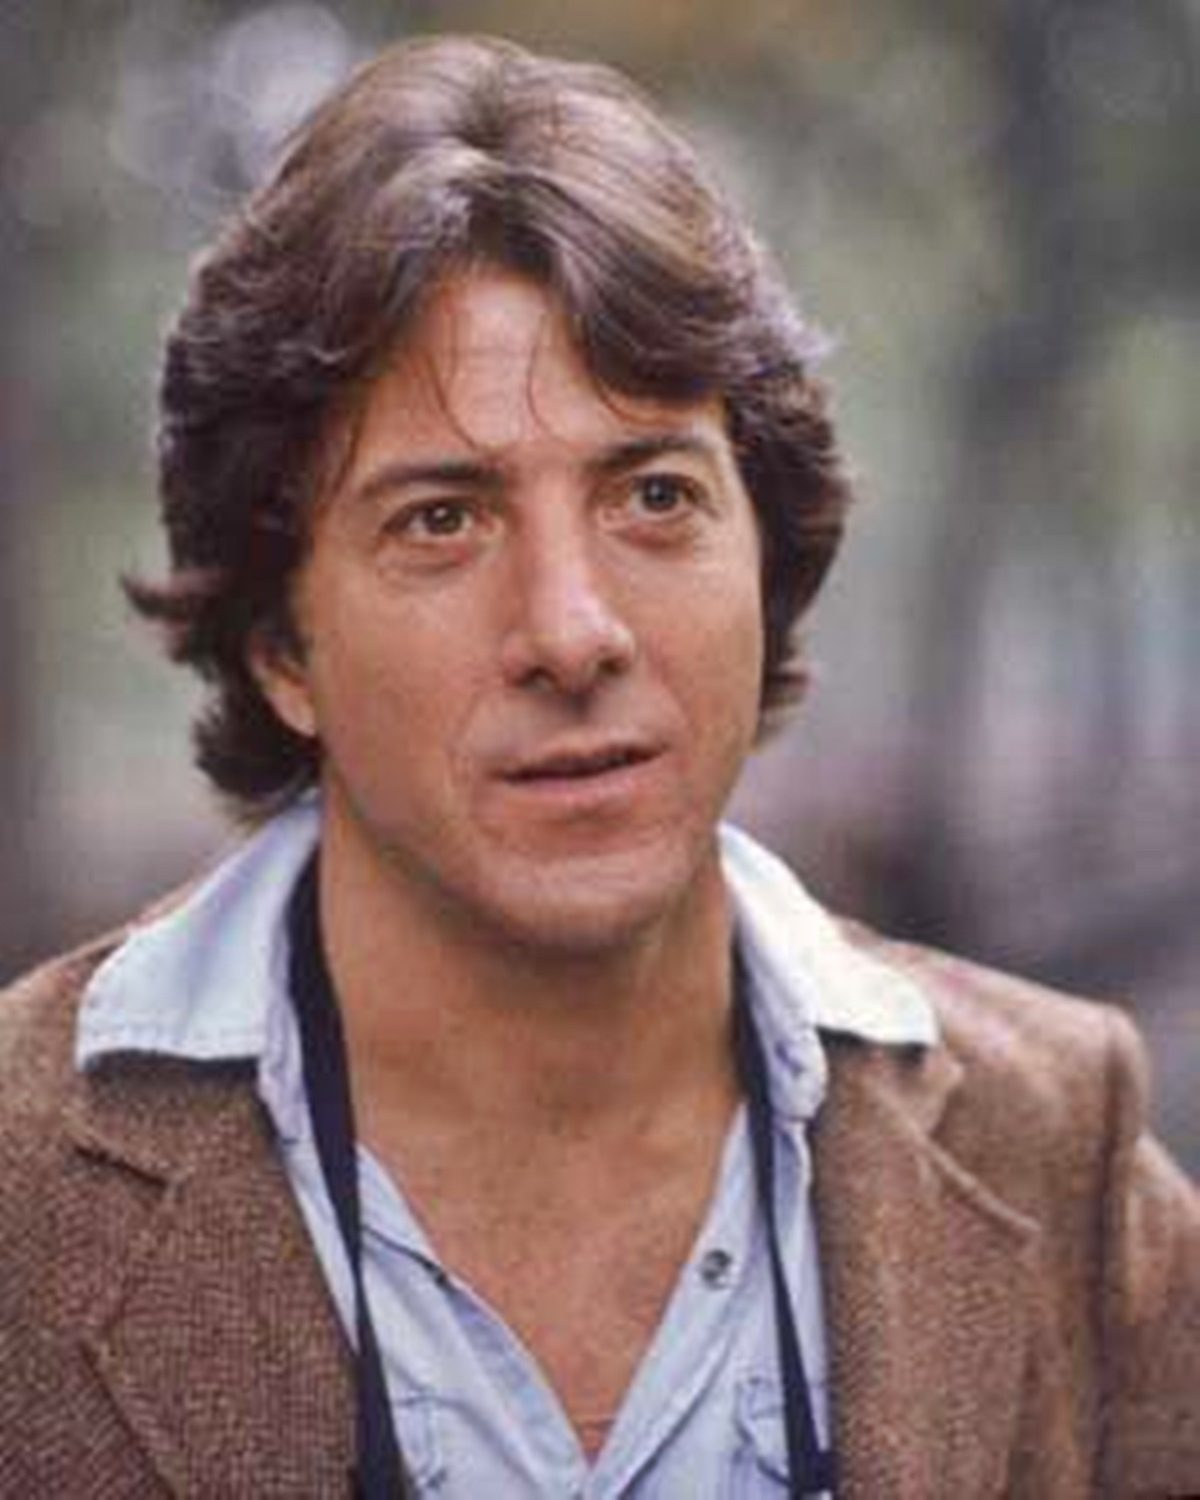 Dustin Hoffman fia irtó jóképű: a 41 éves Jake az apja után szintén a mozi világát választotta magának